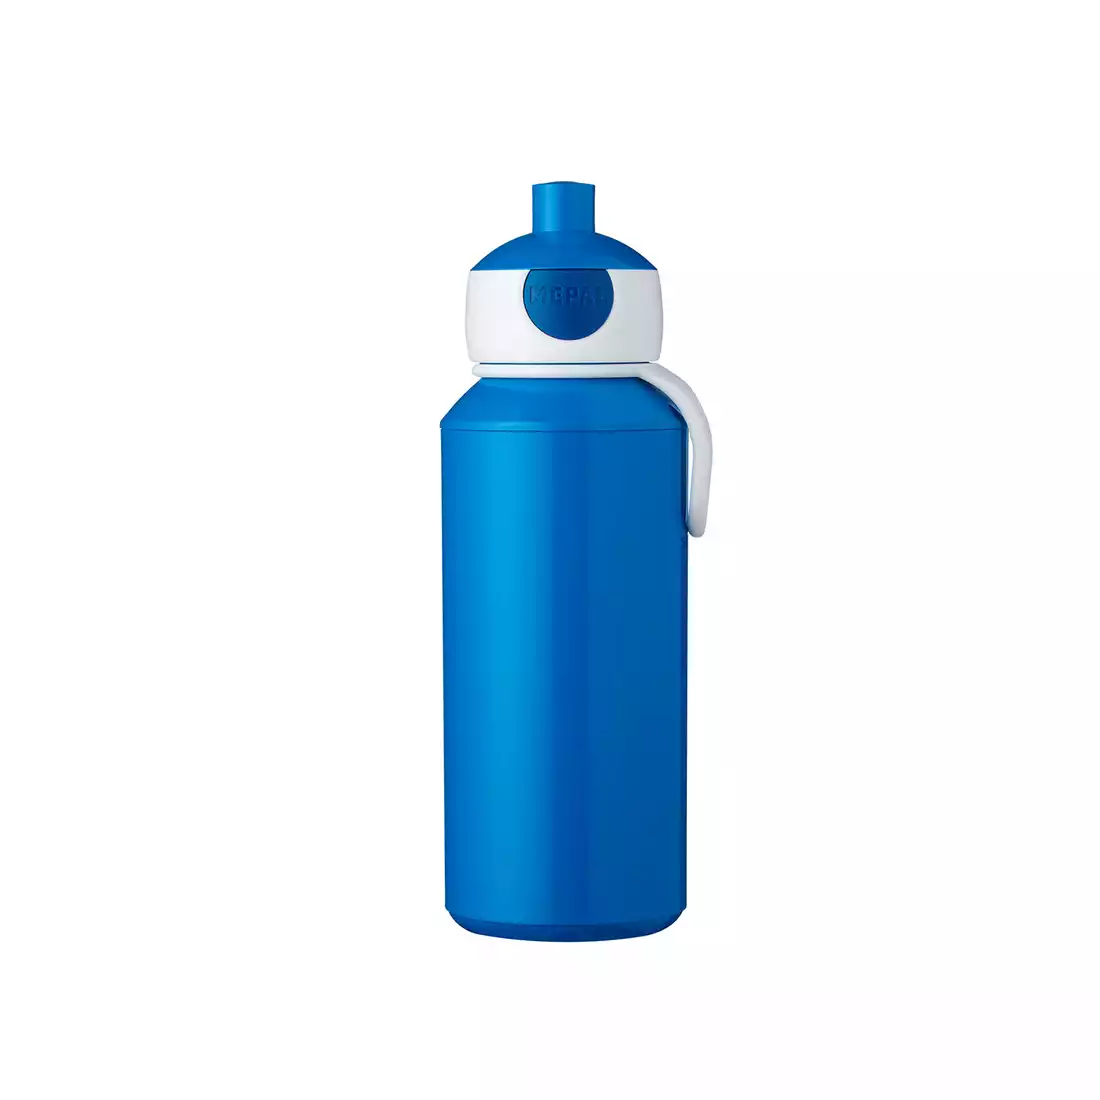 MEPAL POP-UP CAMPUS water bottle for children 400 ml blue